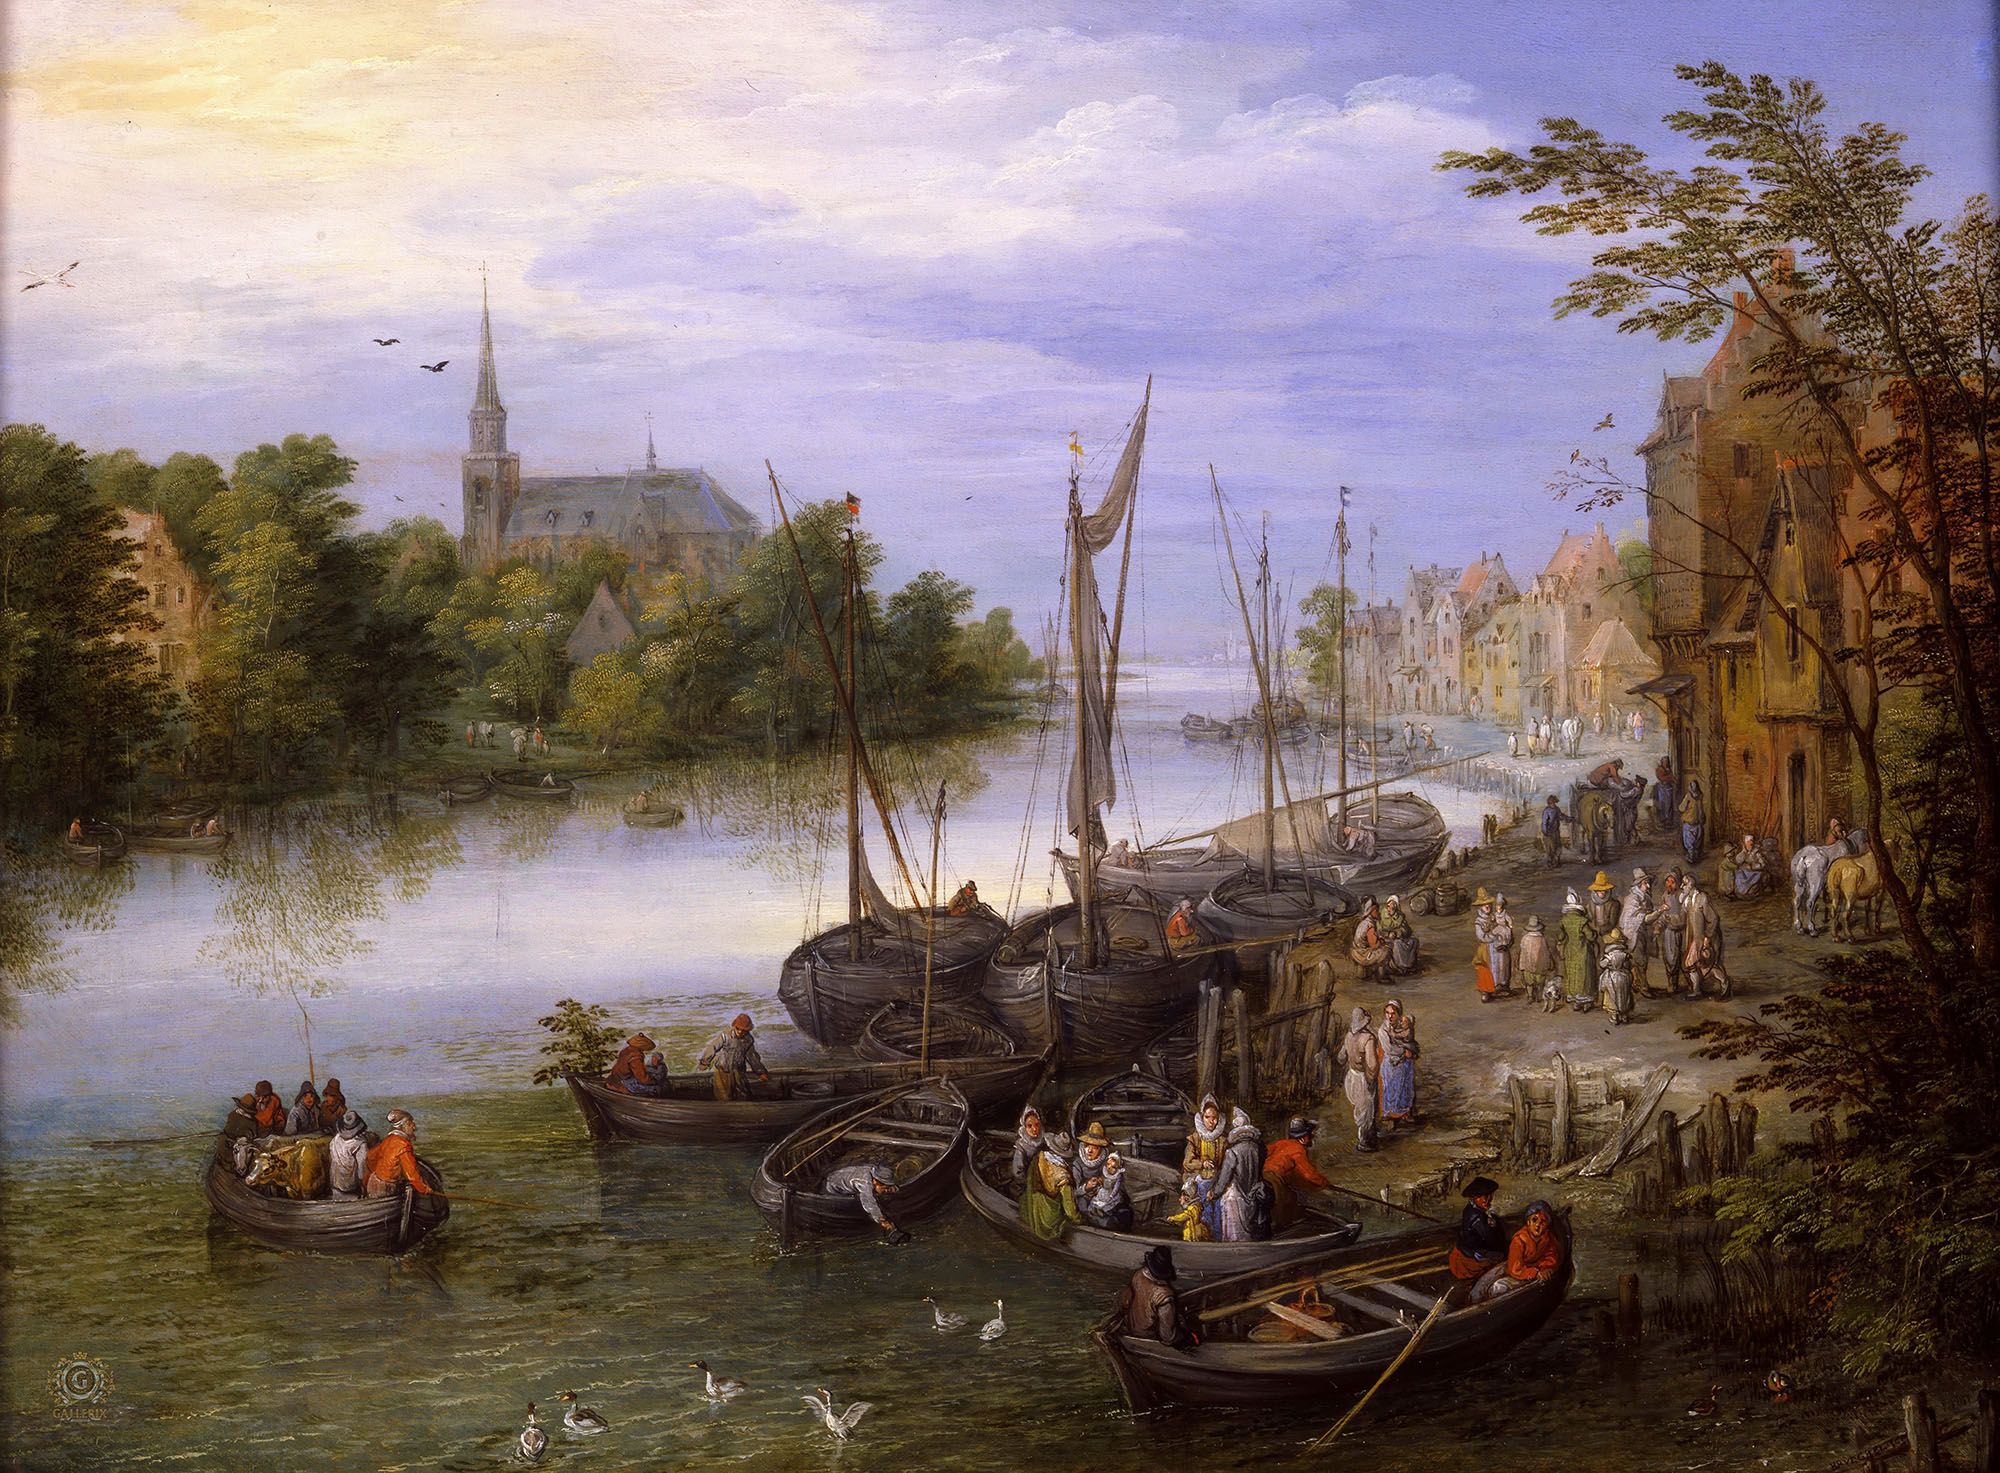 Ян Брейгель Старший. "Пейзаж с деревней и пристанью на берегу реки". около 1610. Частная коллекция.